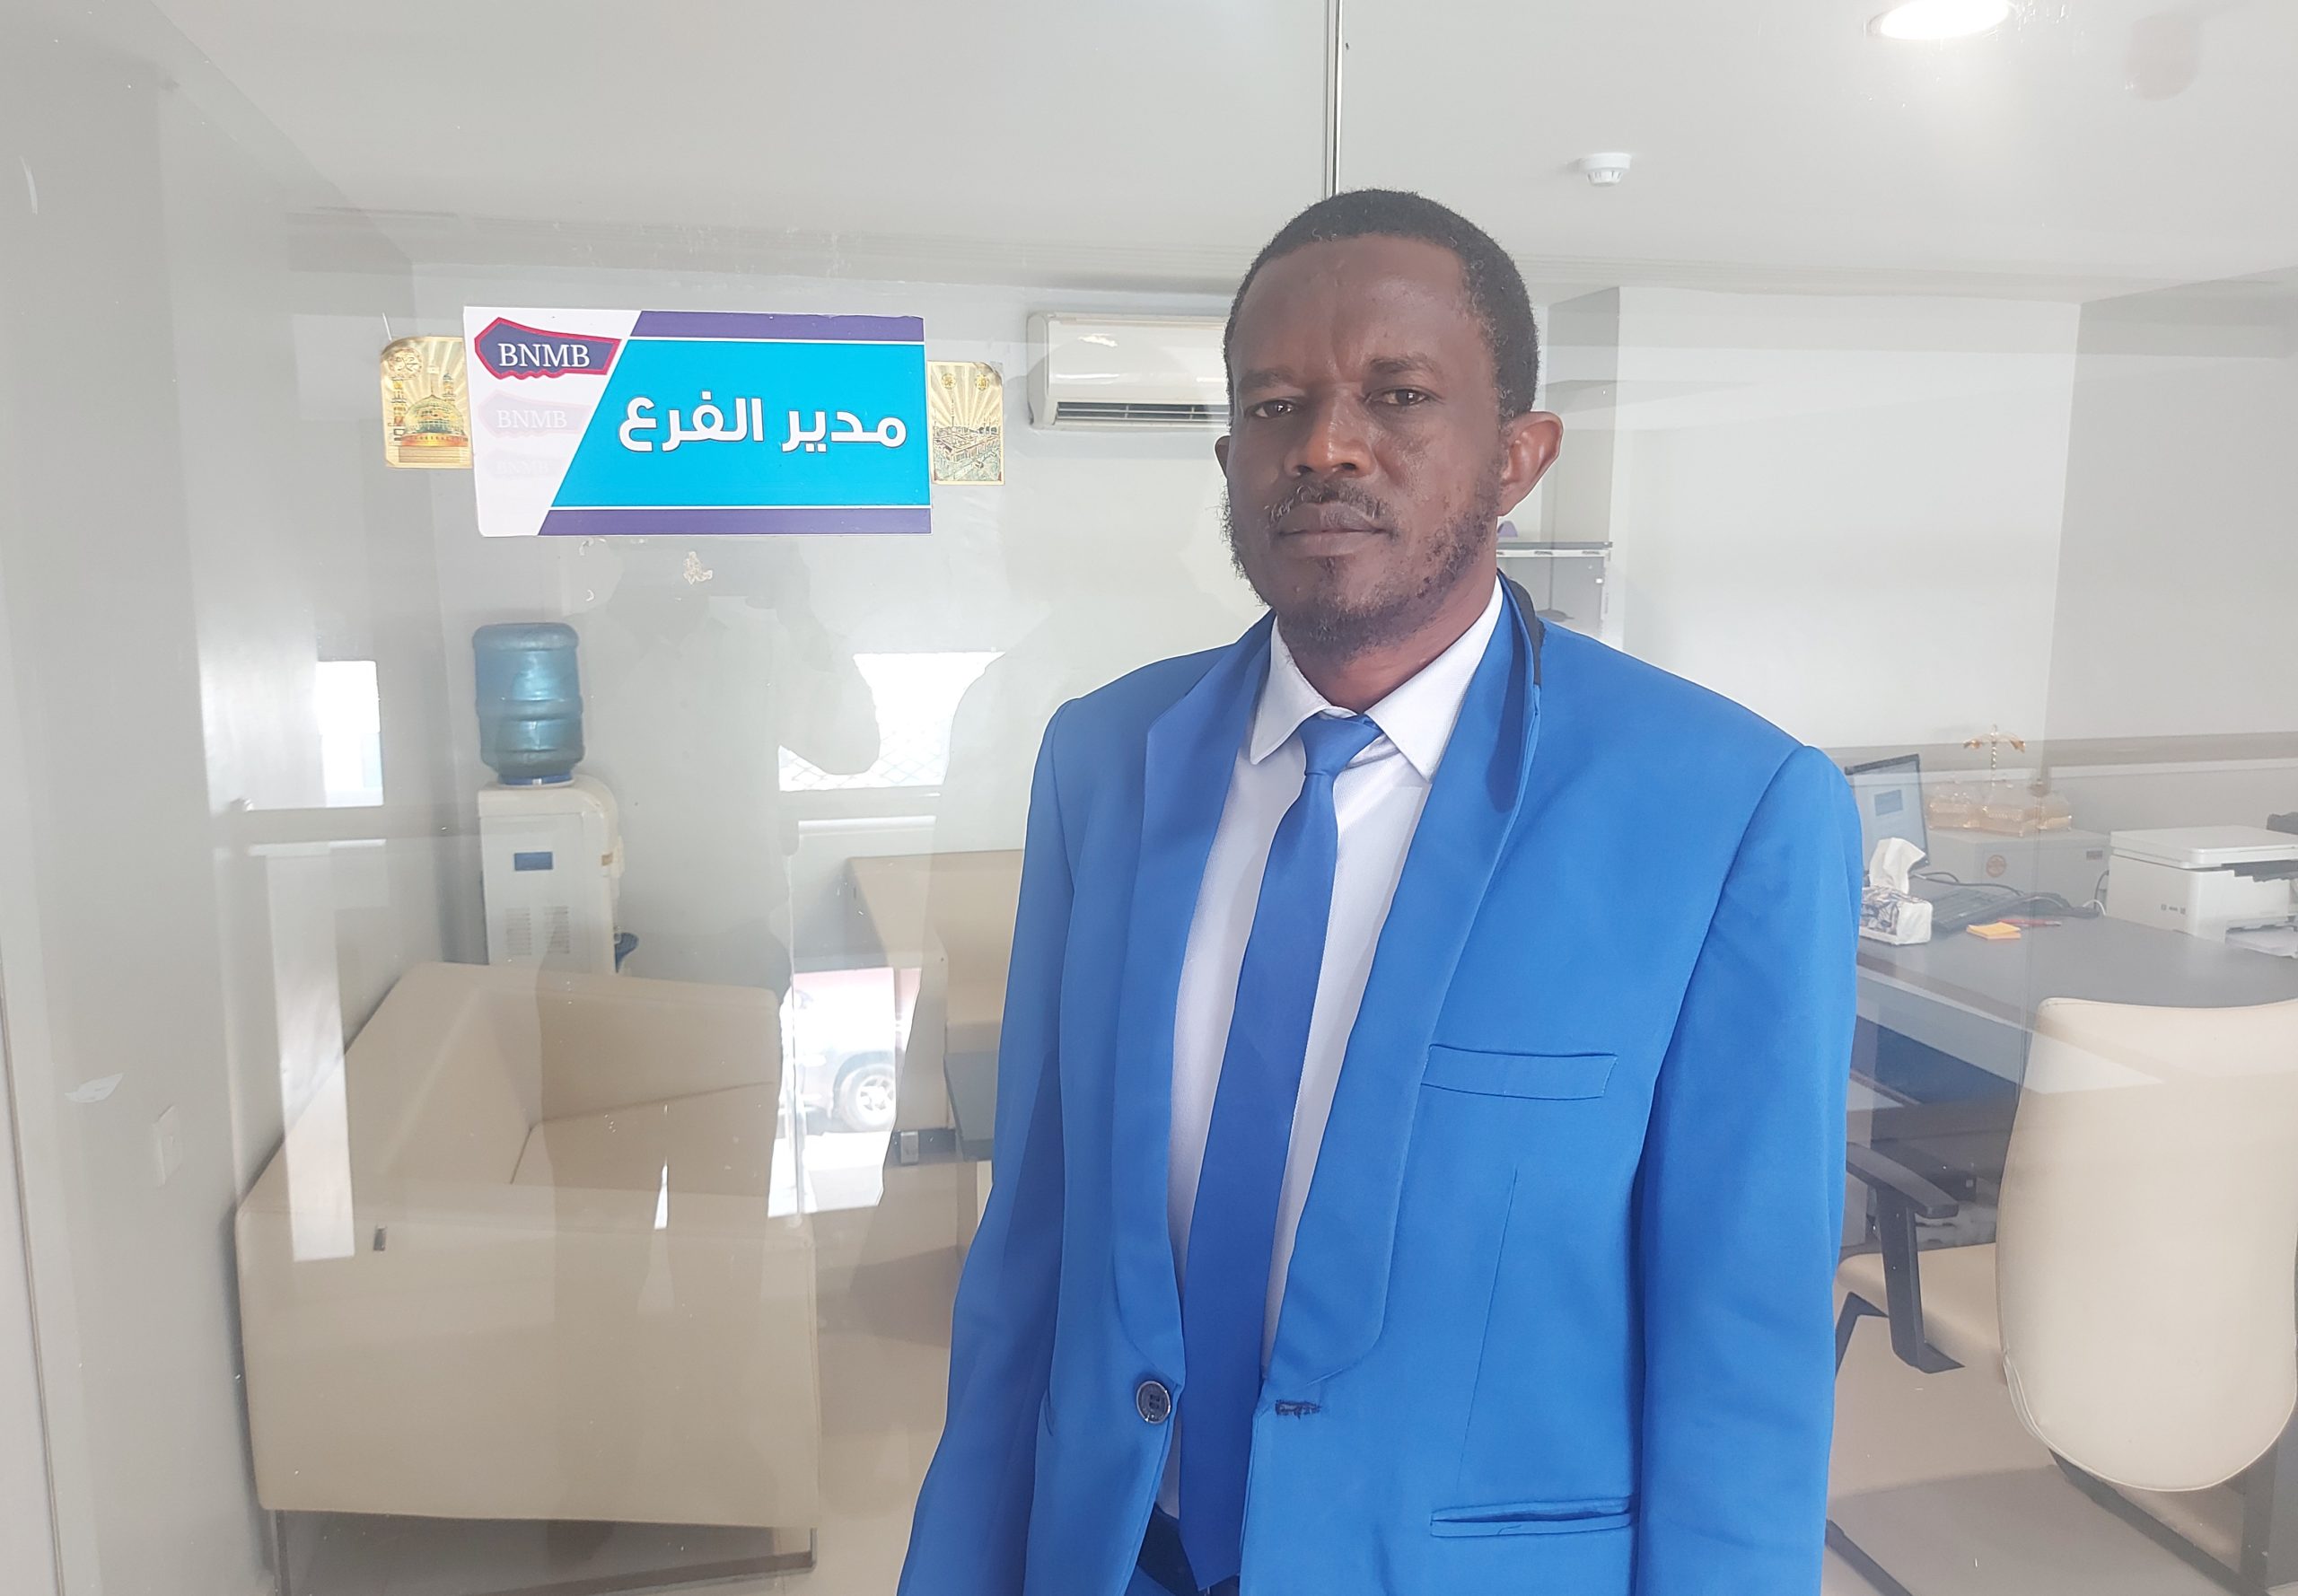 مدير بنك النيل الأزرق المشرق فرع كوستي الدكتور مهدي بابكر عوض الكريم الرضي 